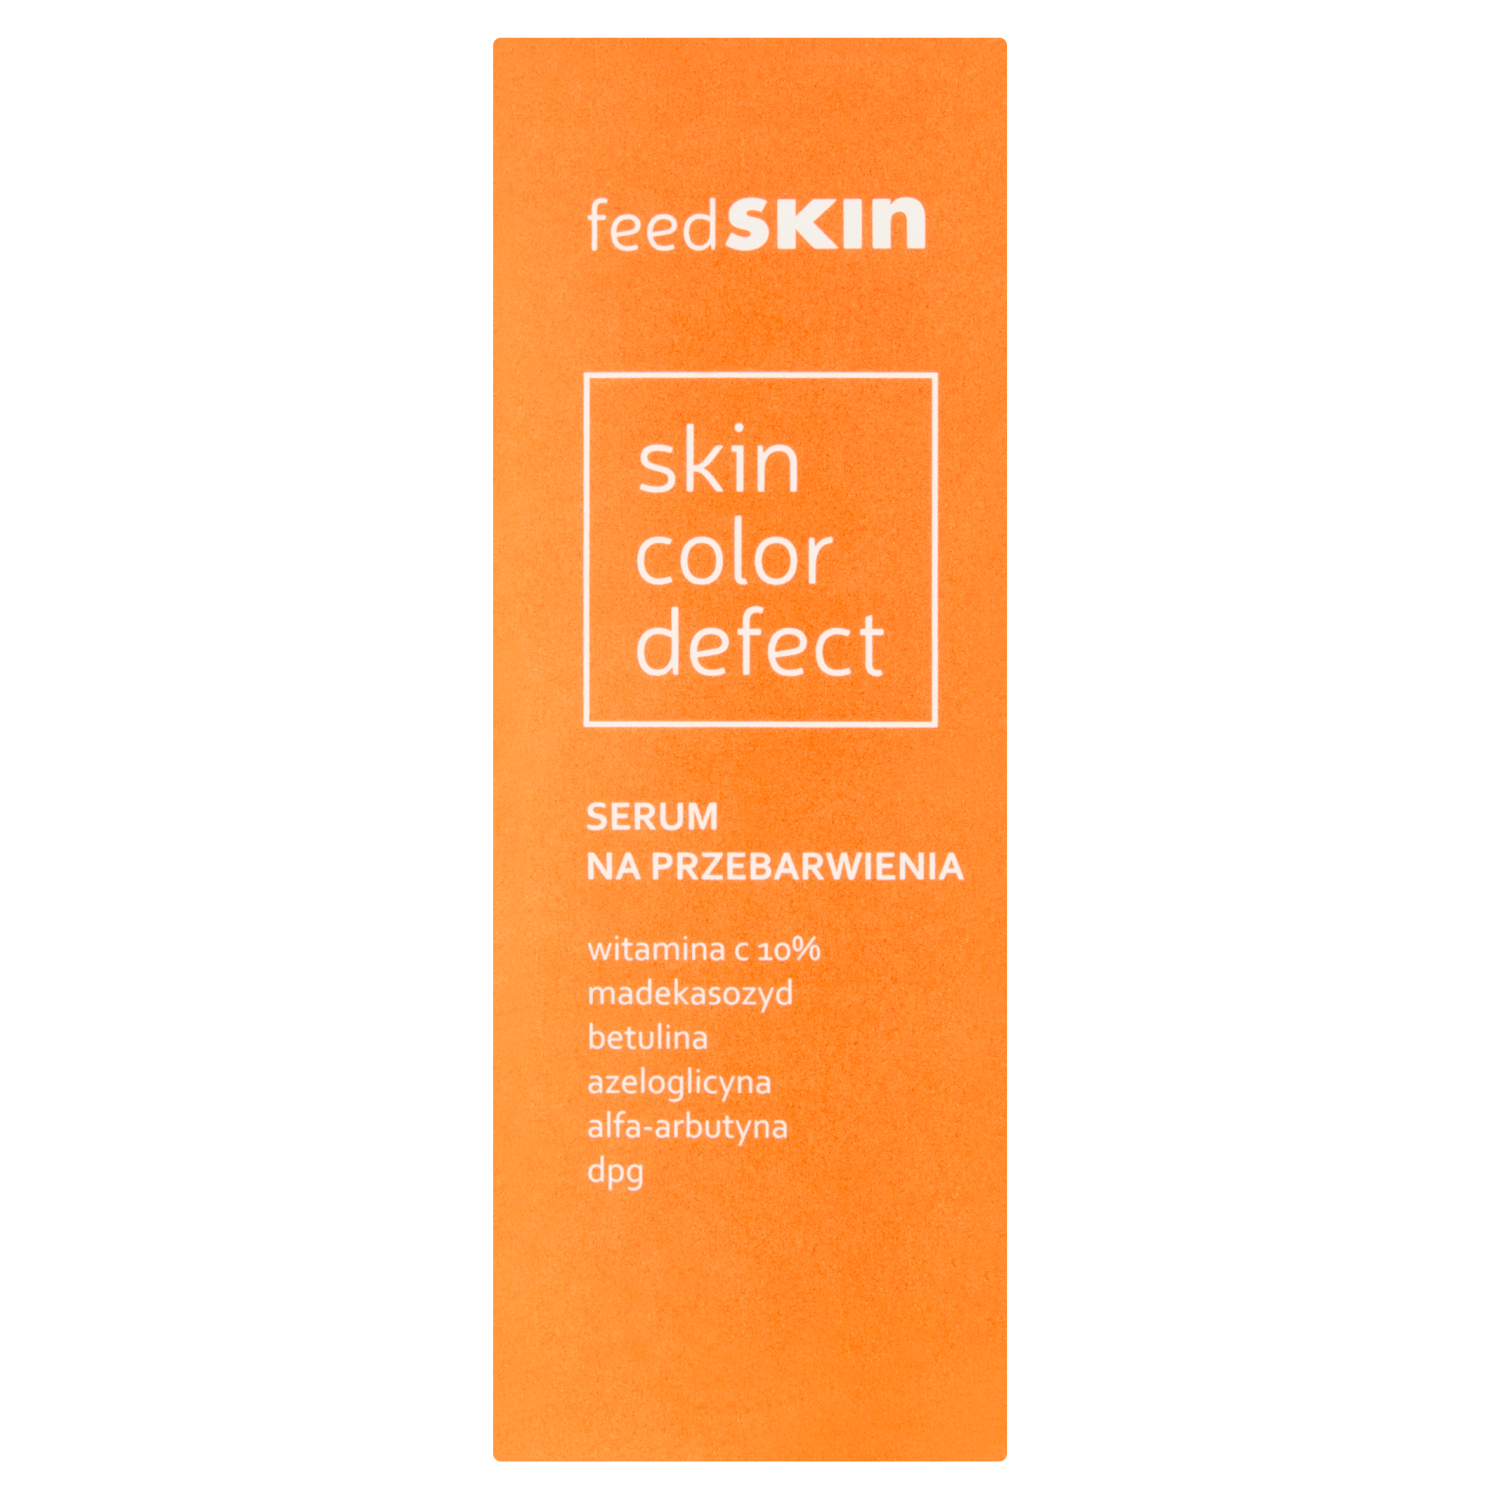 Feedskin Skin Color Defect сыворотка для лица от пигментных пятен, 30 мл